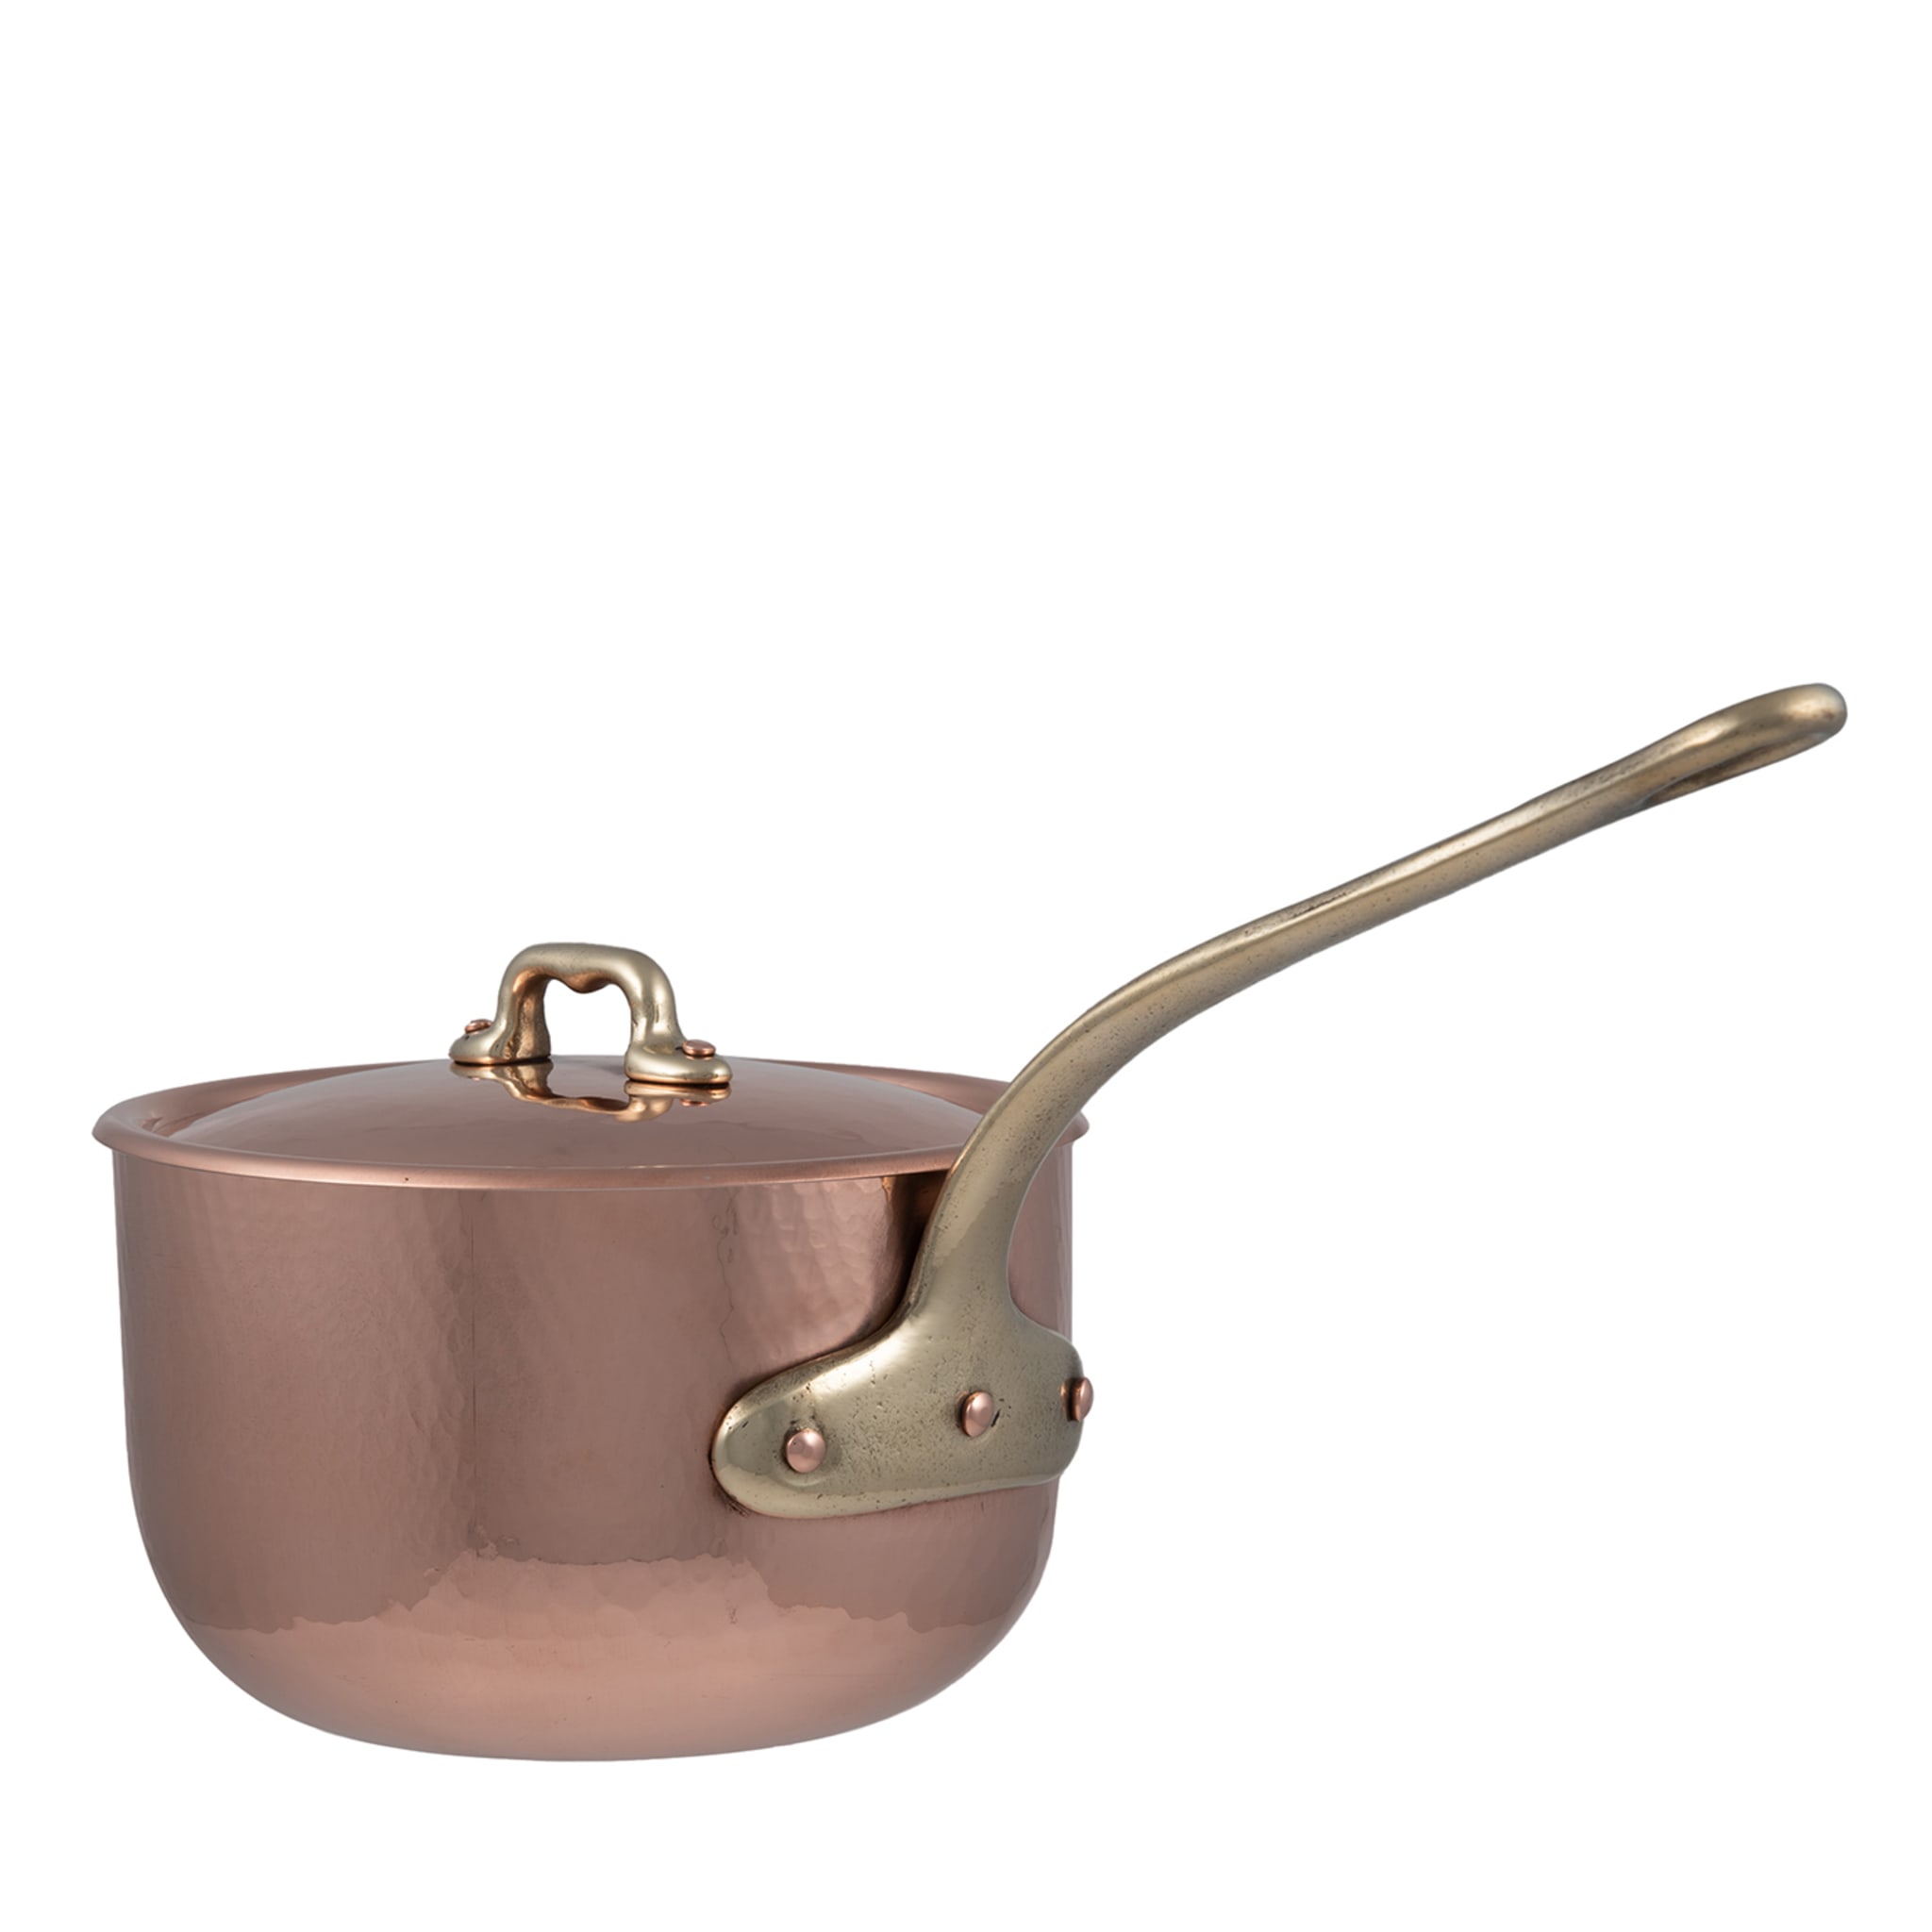 Bulging Copper Saucepan Dish with Lid - Main view